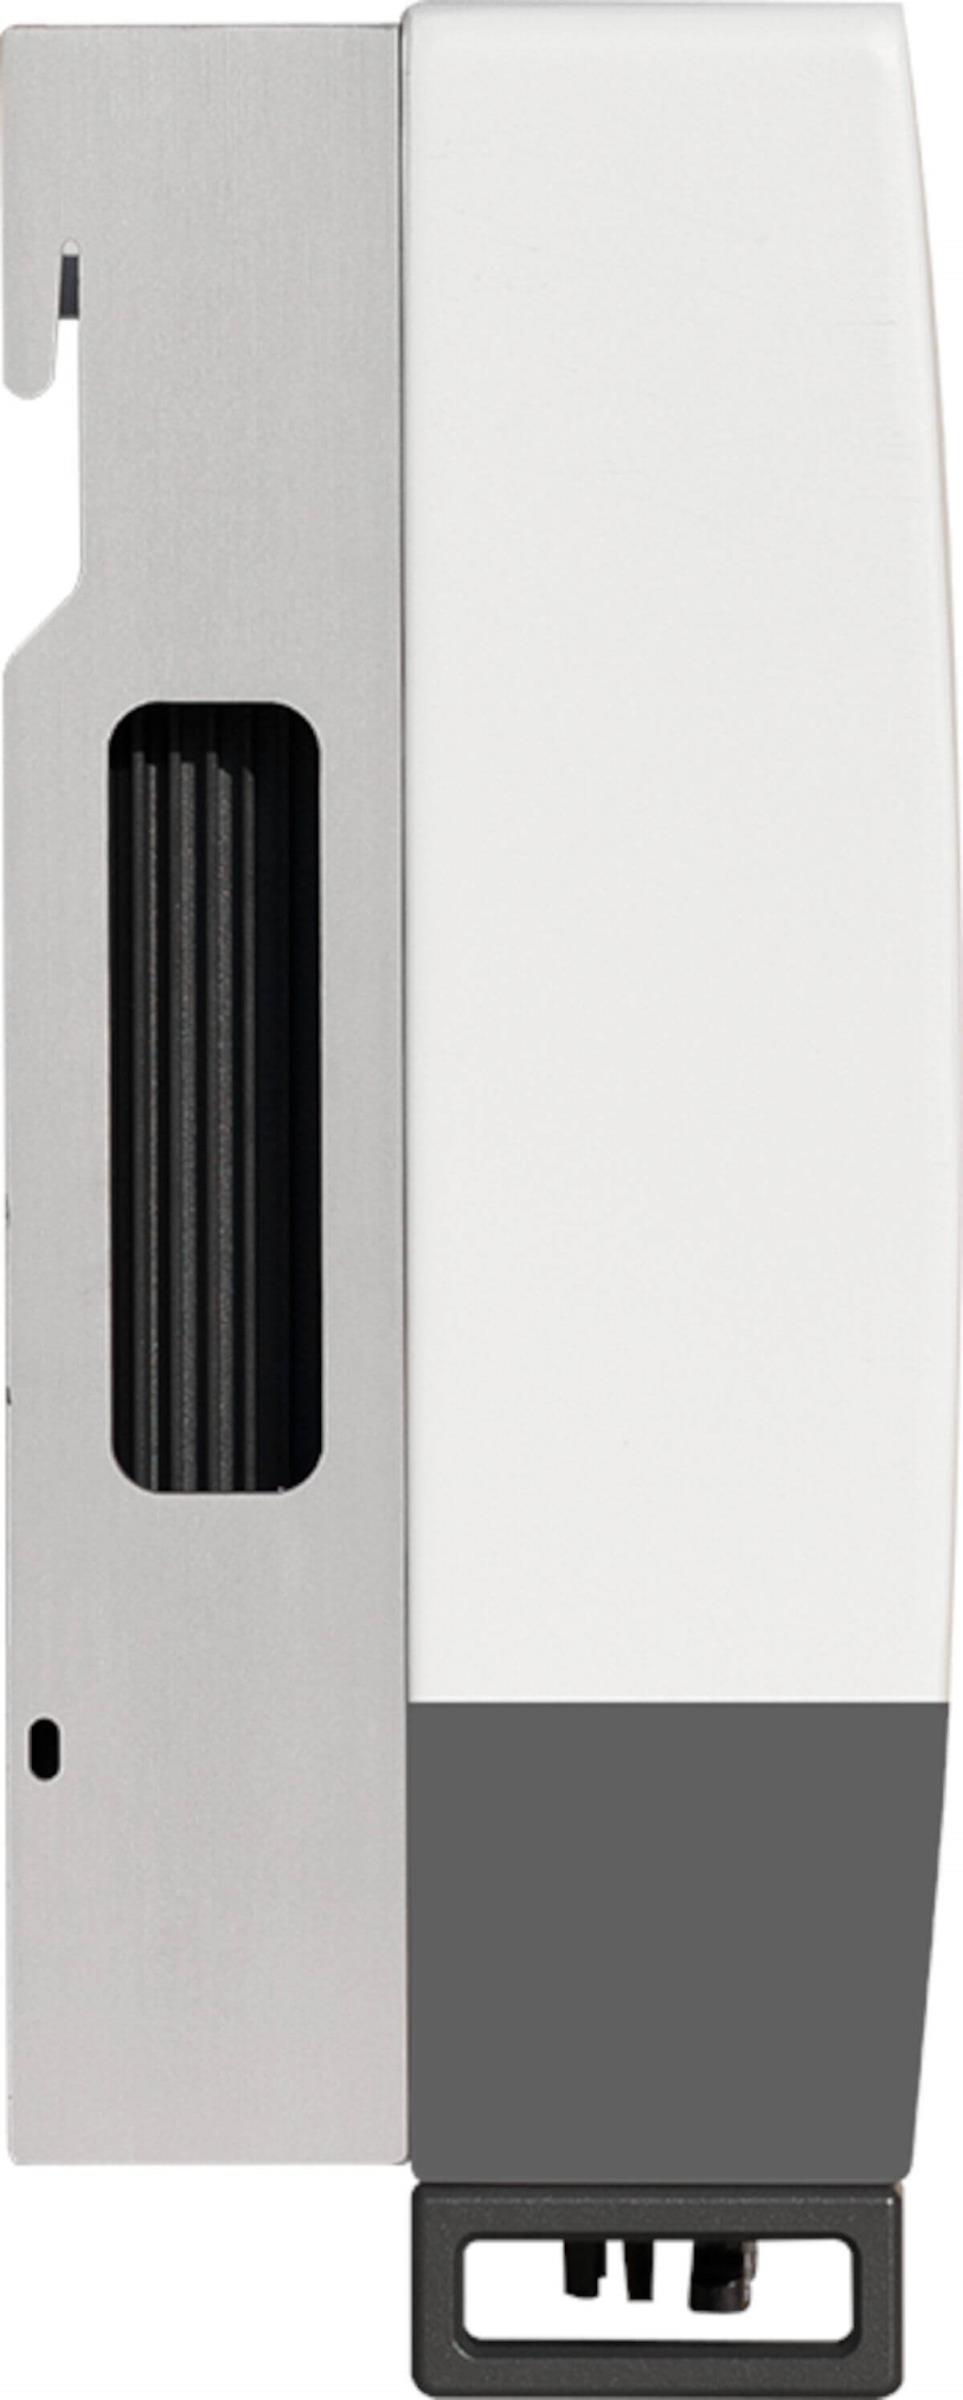 Solis Hybrid-Wechselrichter RHI-3P5K, Seitenansicht, auf weißem Hintergrund